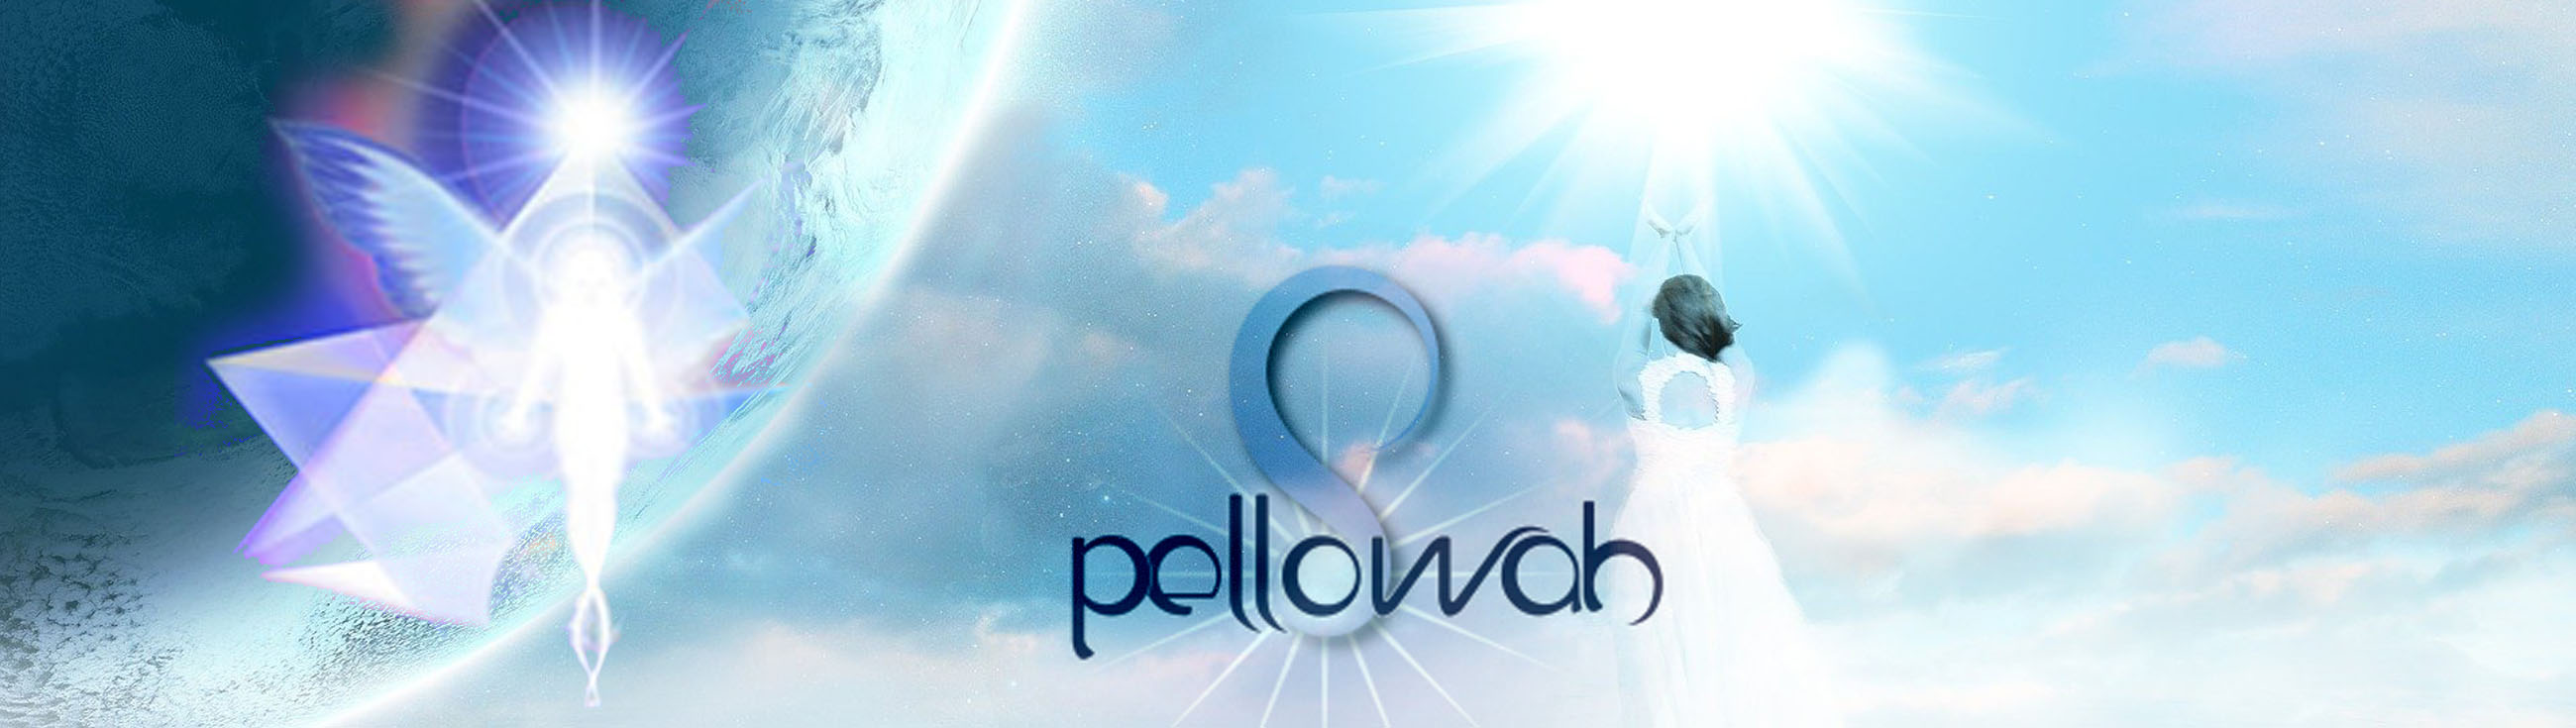 Pellowah